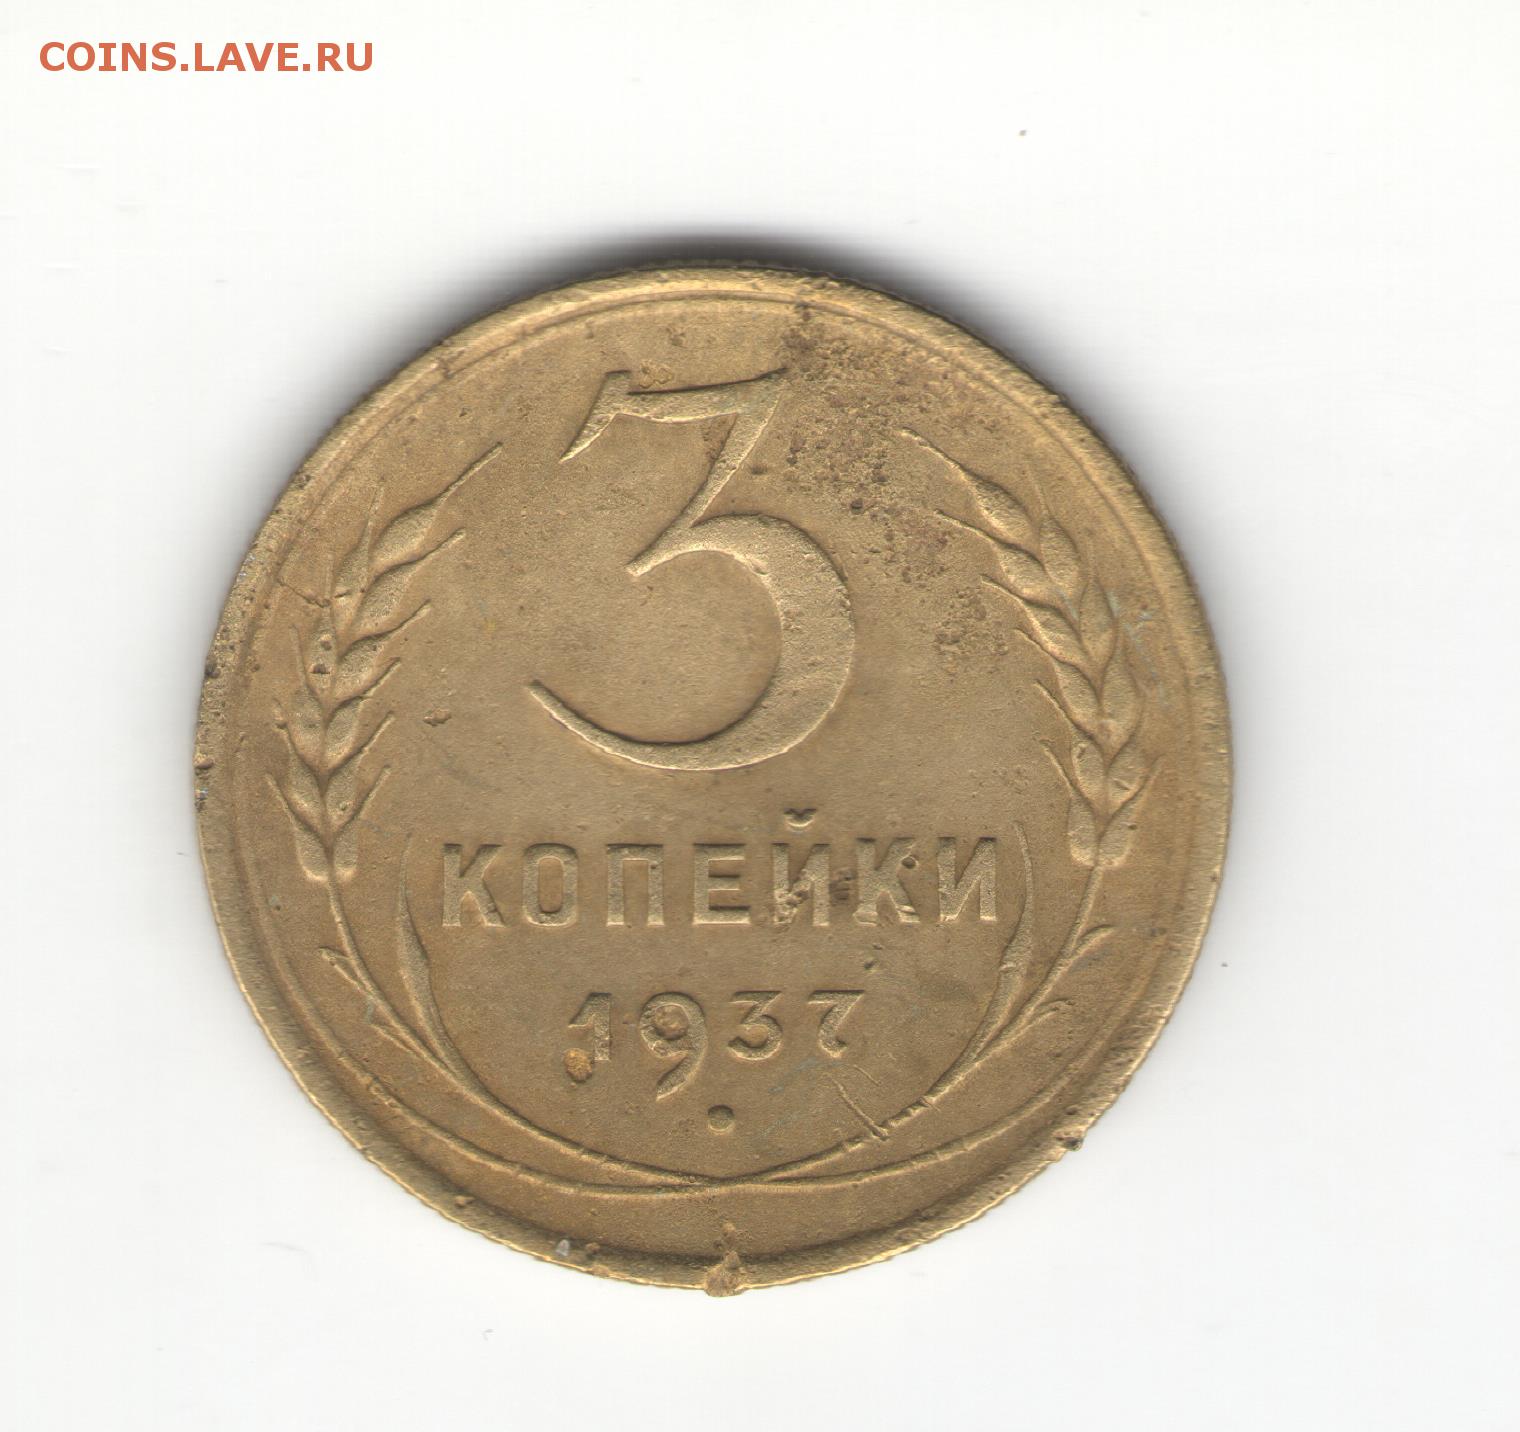 7 рублей 3 копейки. 3 Копейки 1955 VF+. 3 Копейки 1953 года f №9. 3 Копейки 1946 года f №10. 3 Копейки 1948 года f №6.